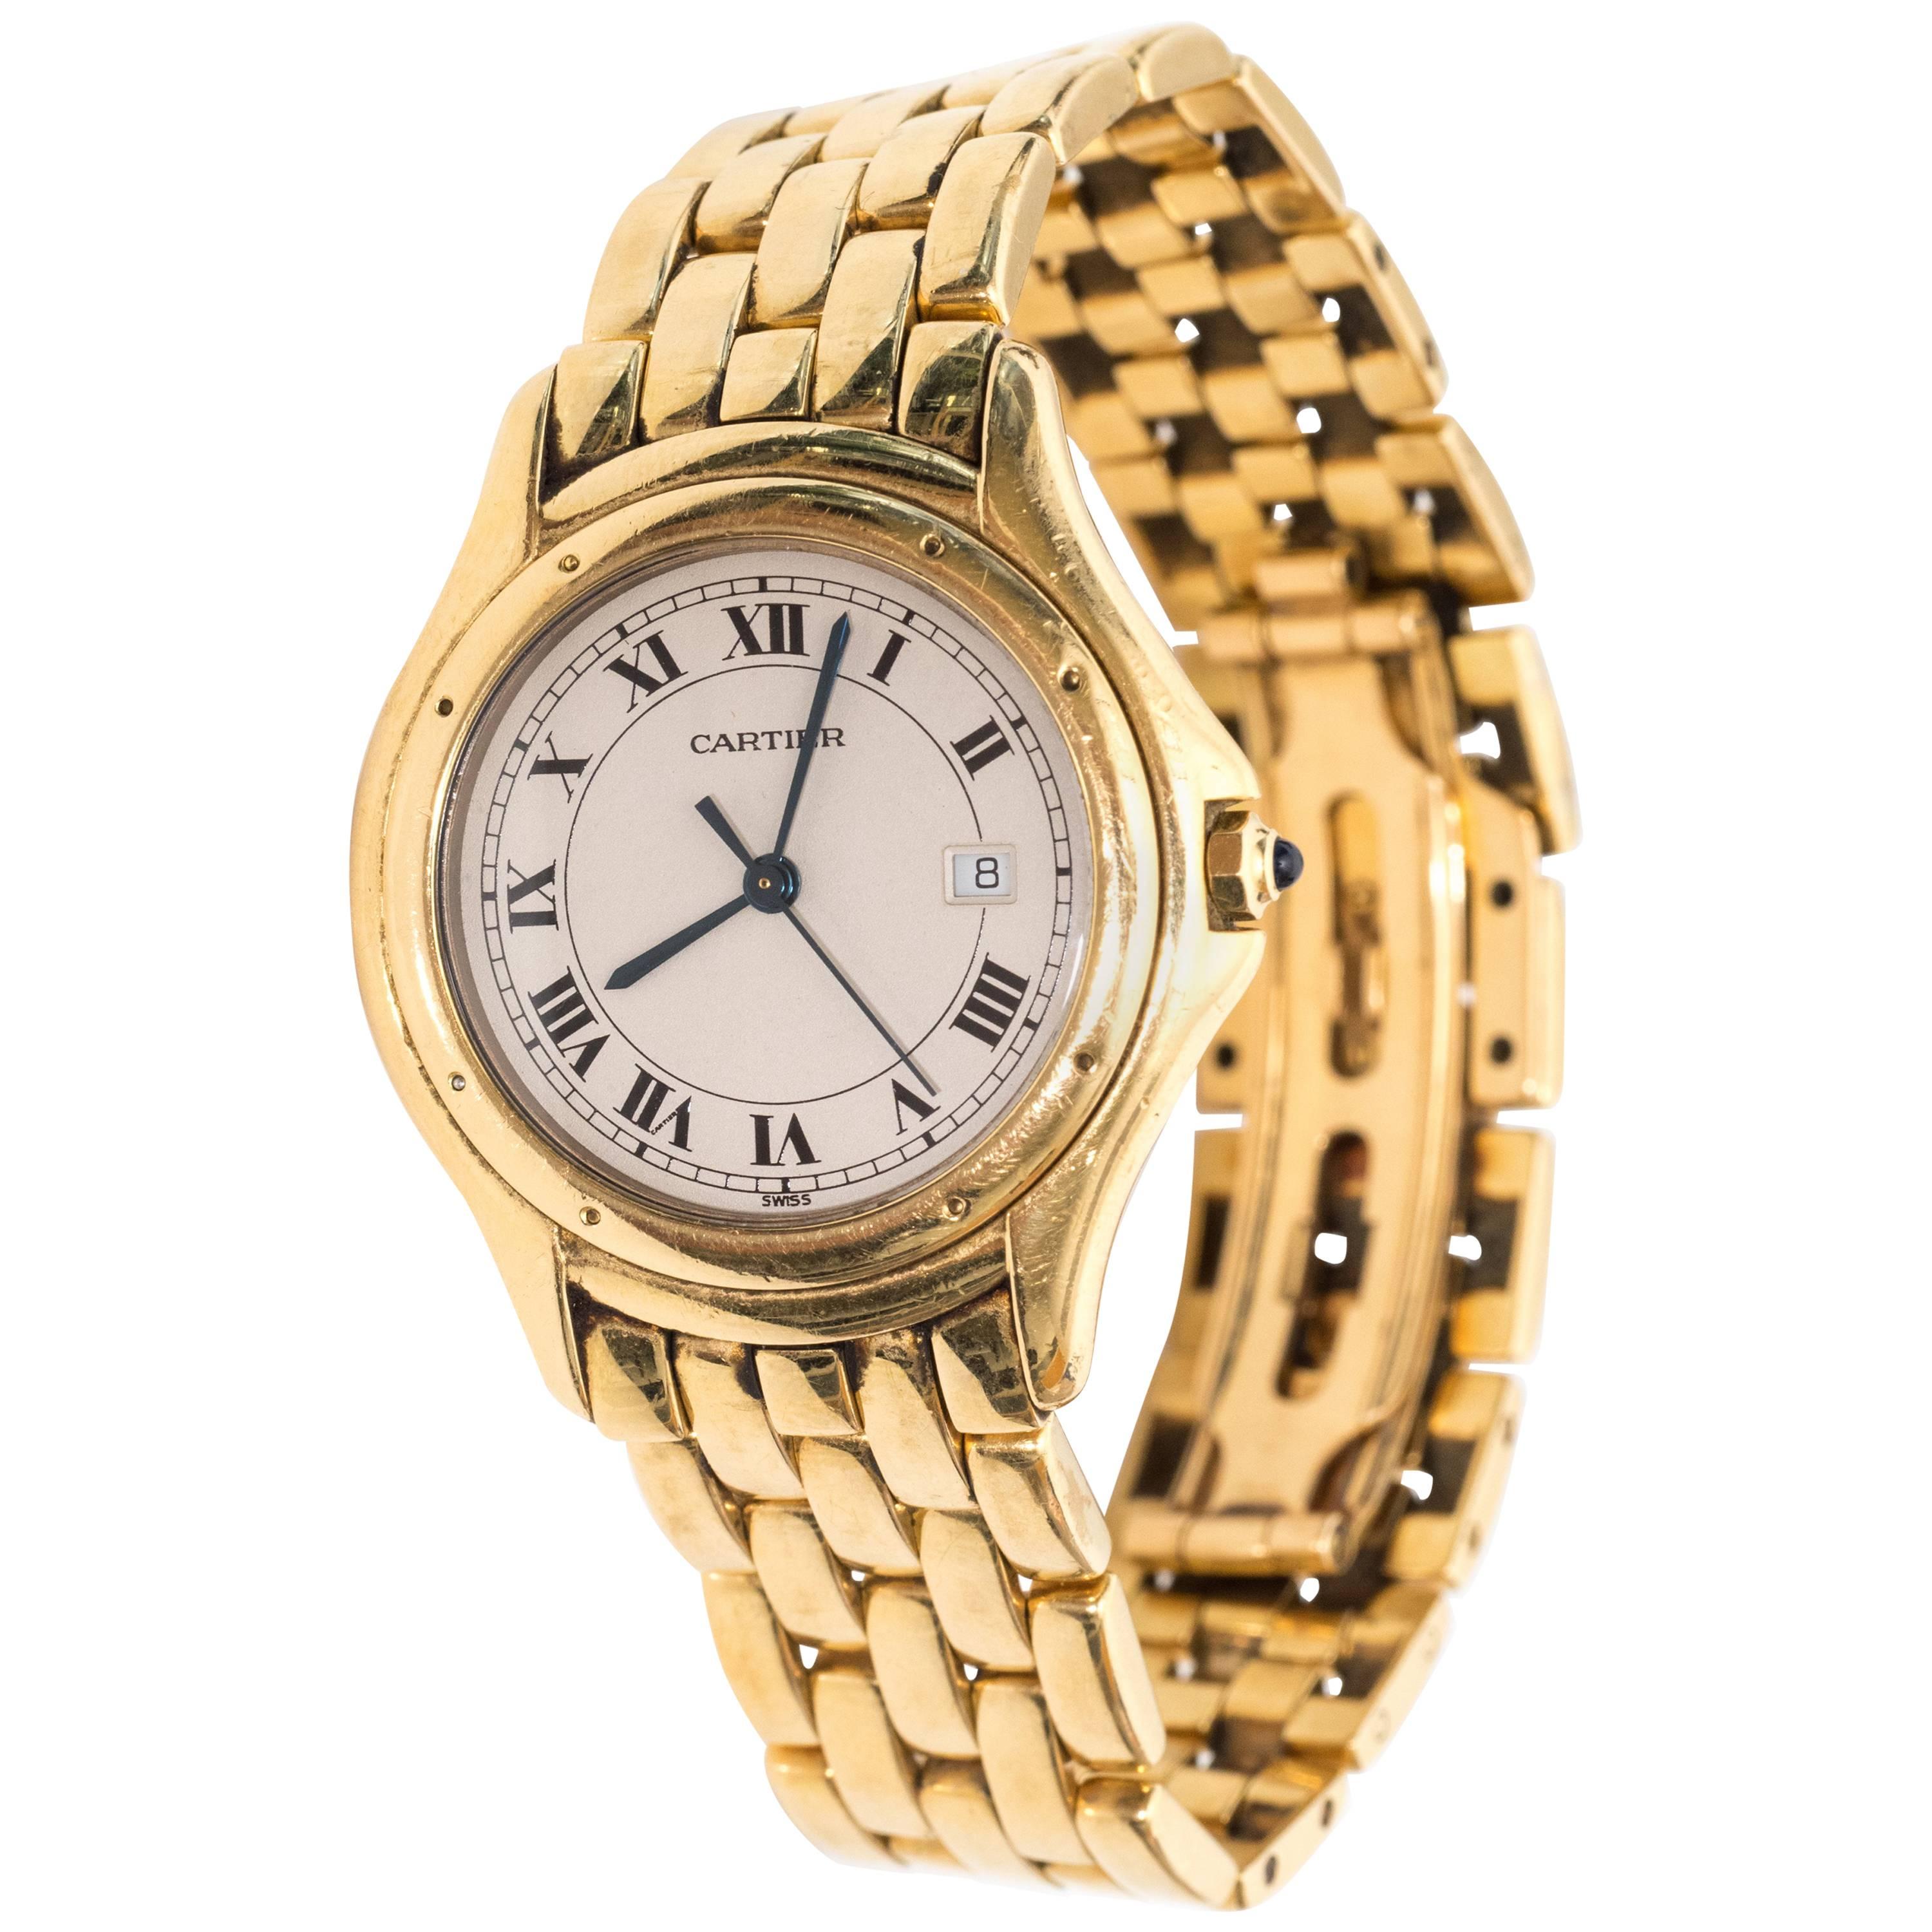 1980s Cartier Cougar 18 Karat Yellow Gold Watch